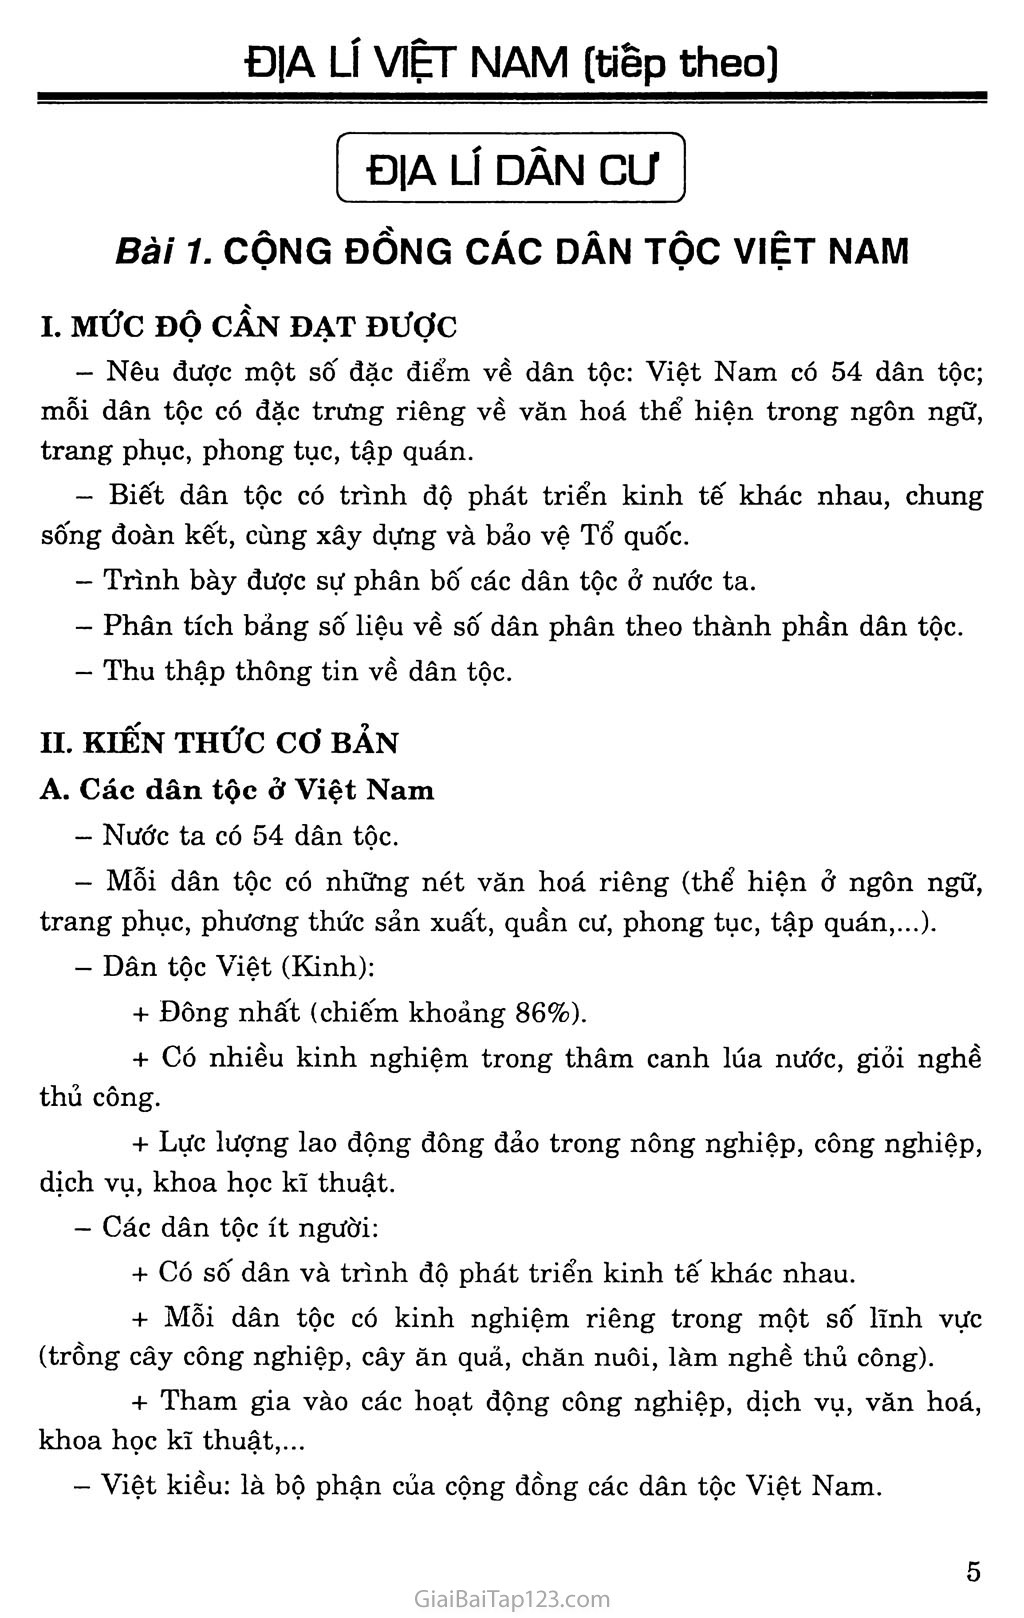 Bài 1: Cộng đồng các dân tộc Việt Nam trang 1